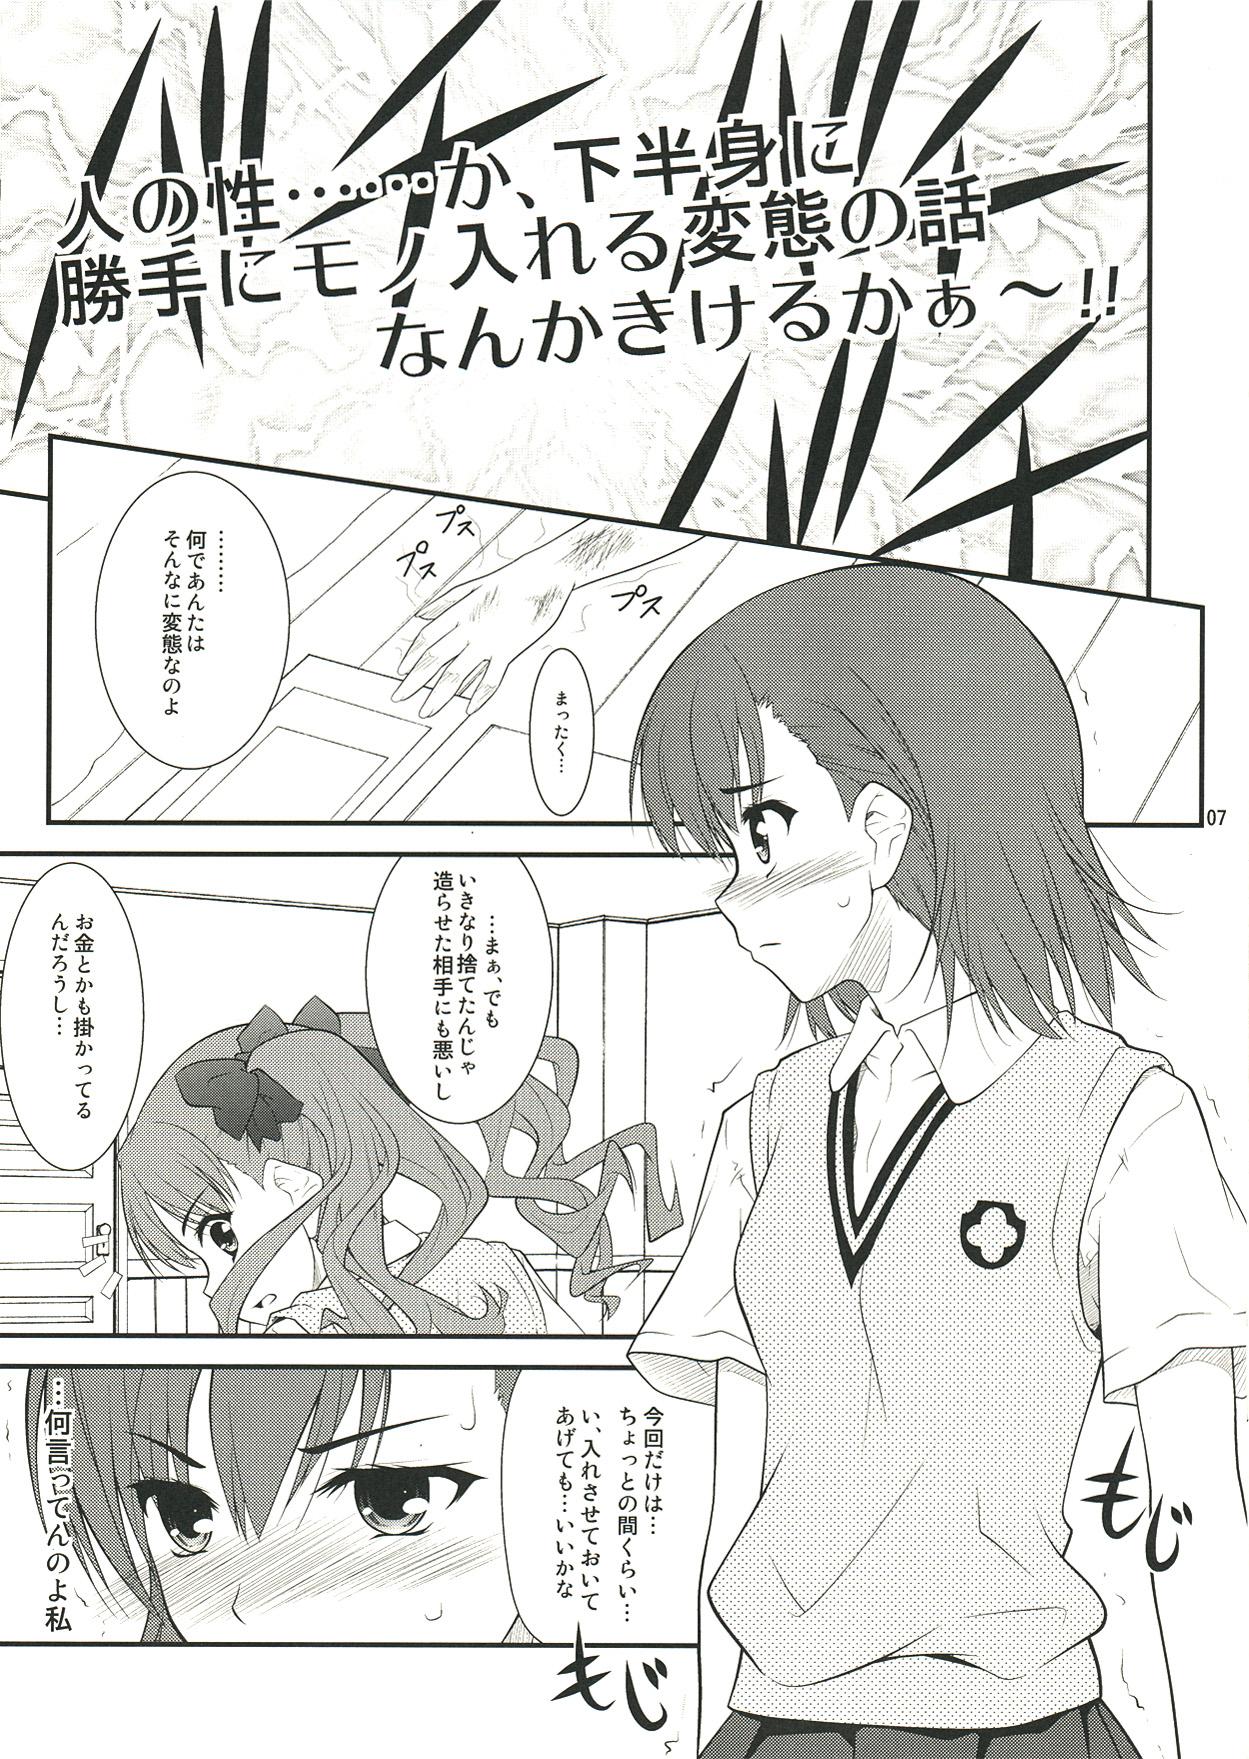 Hot Onee sama…Ku, Kuroko wa Kuroko wa Mou ! - Toaru kagaku no railgun Cunnilingus - Page 7